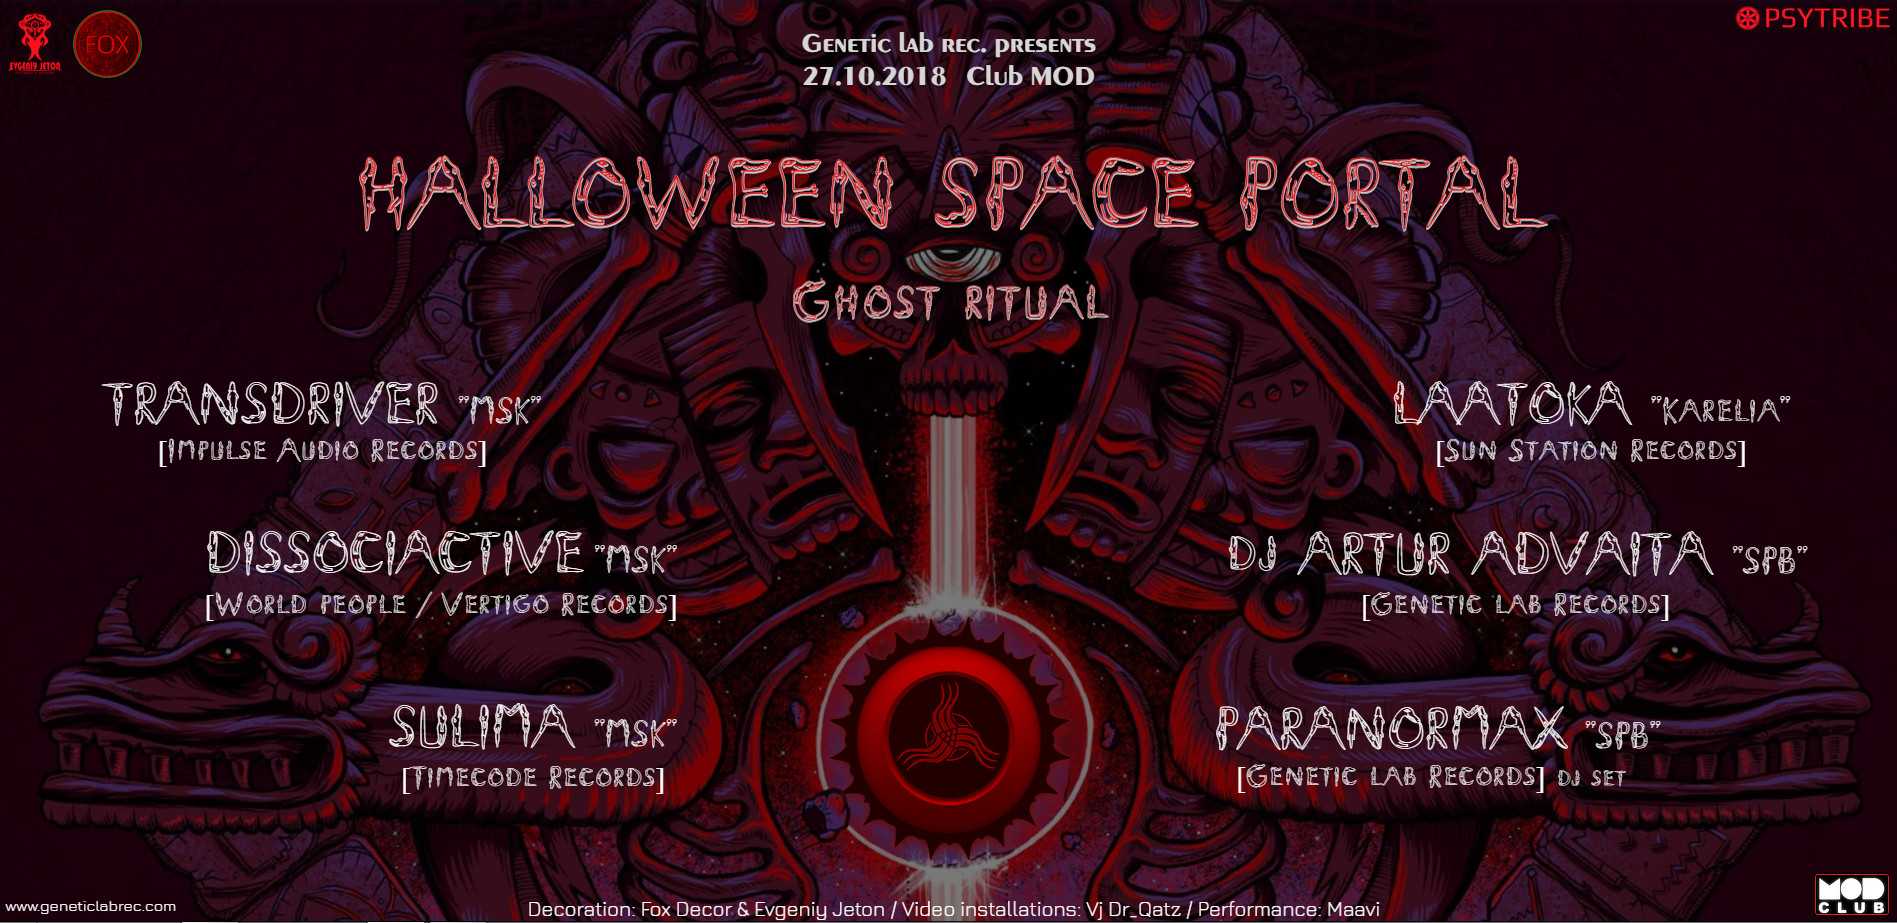 Halloween Space Portal "Ghost ritual"